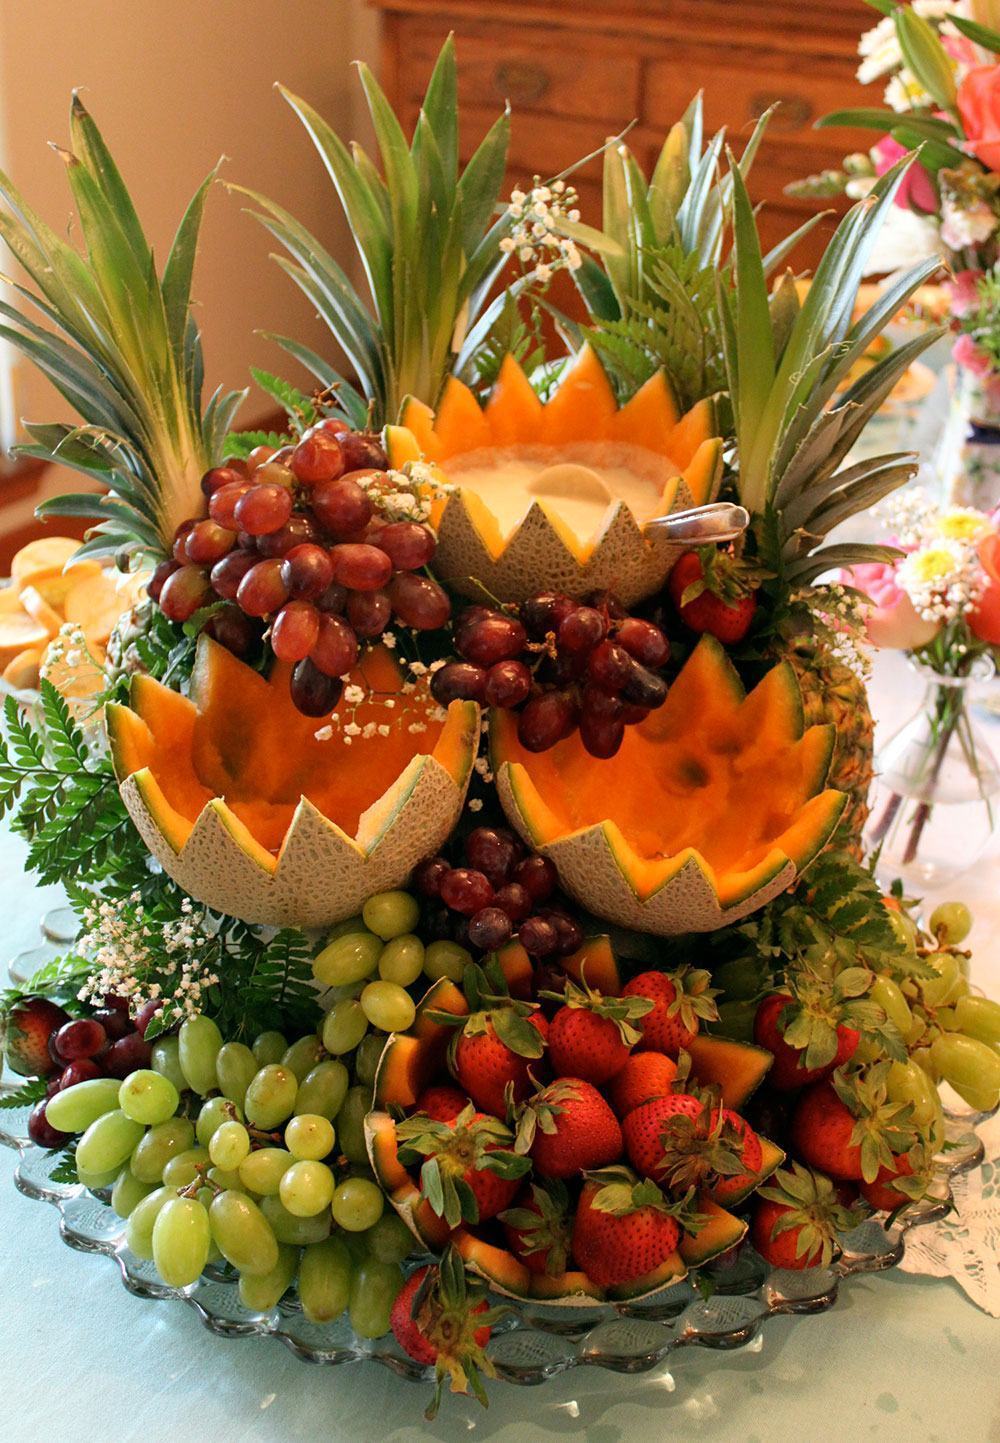 Monte um arranjo de frutas para decorar a mesa.